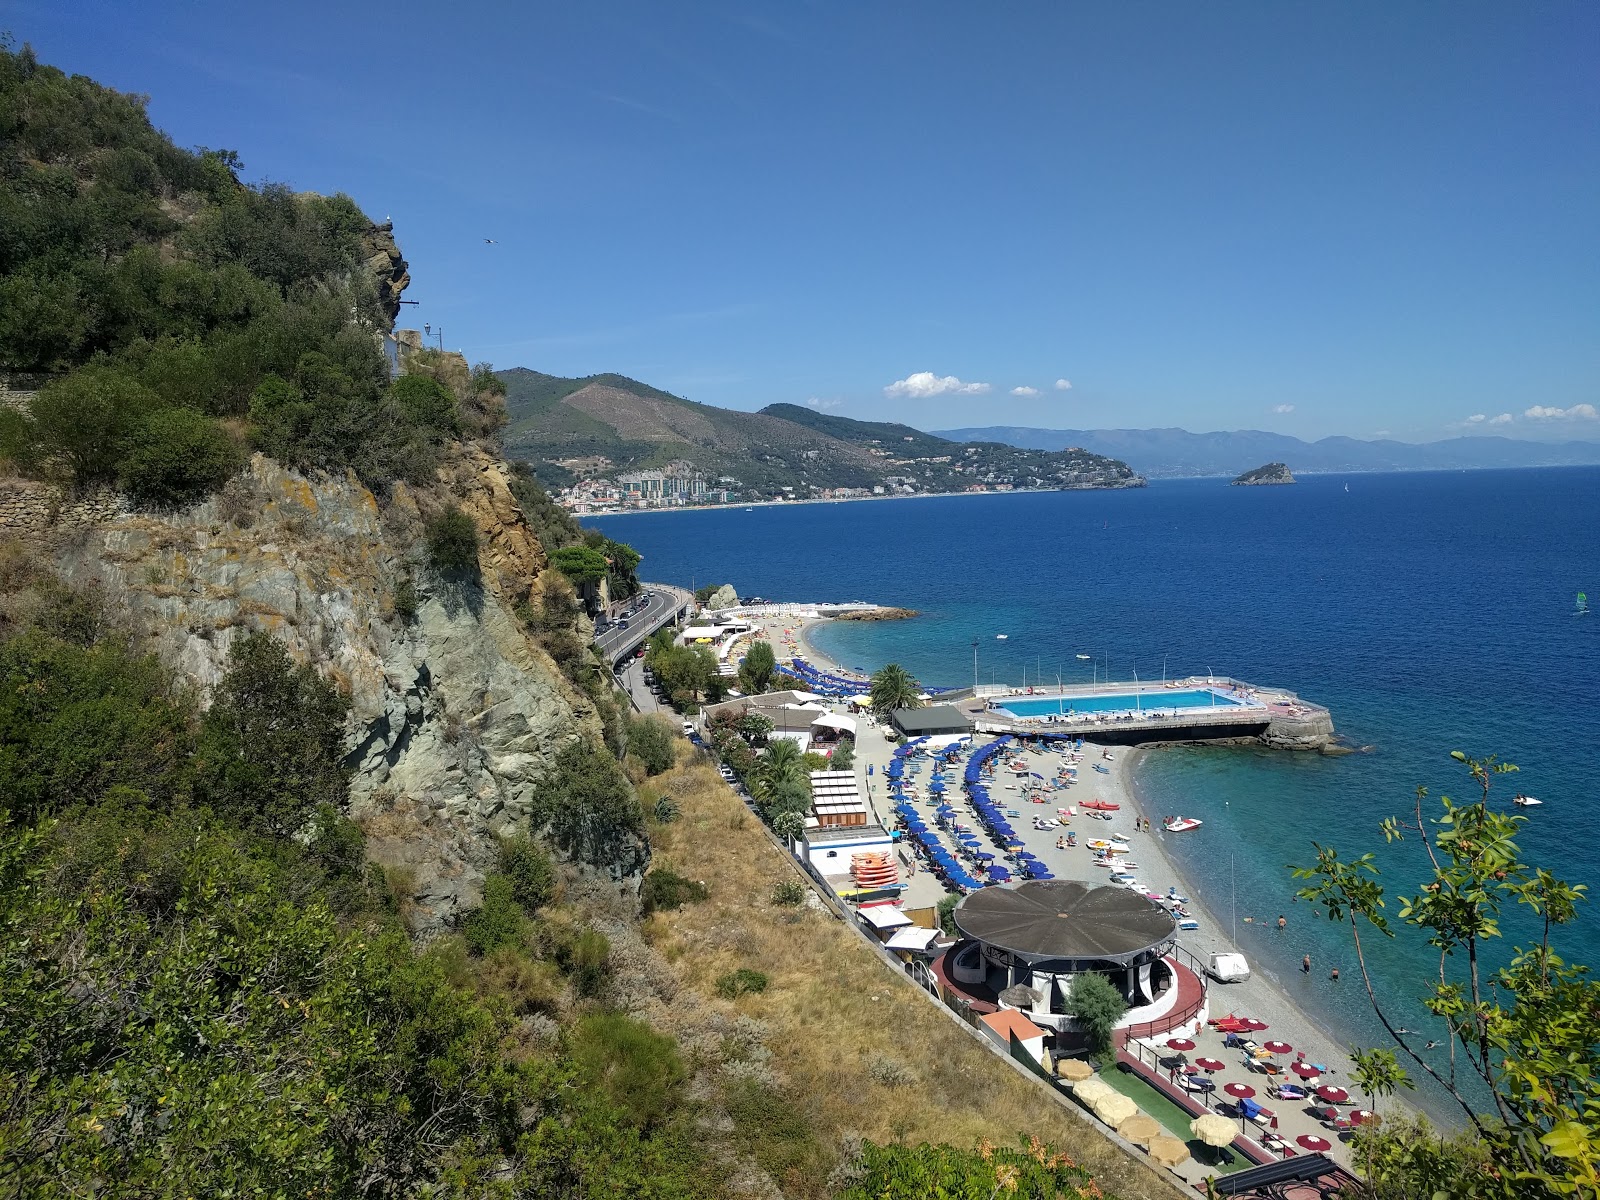 Foto von Spiaggia di Noli mit viele kleine buchten